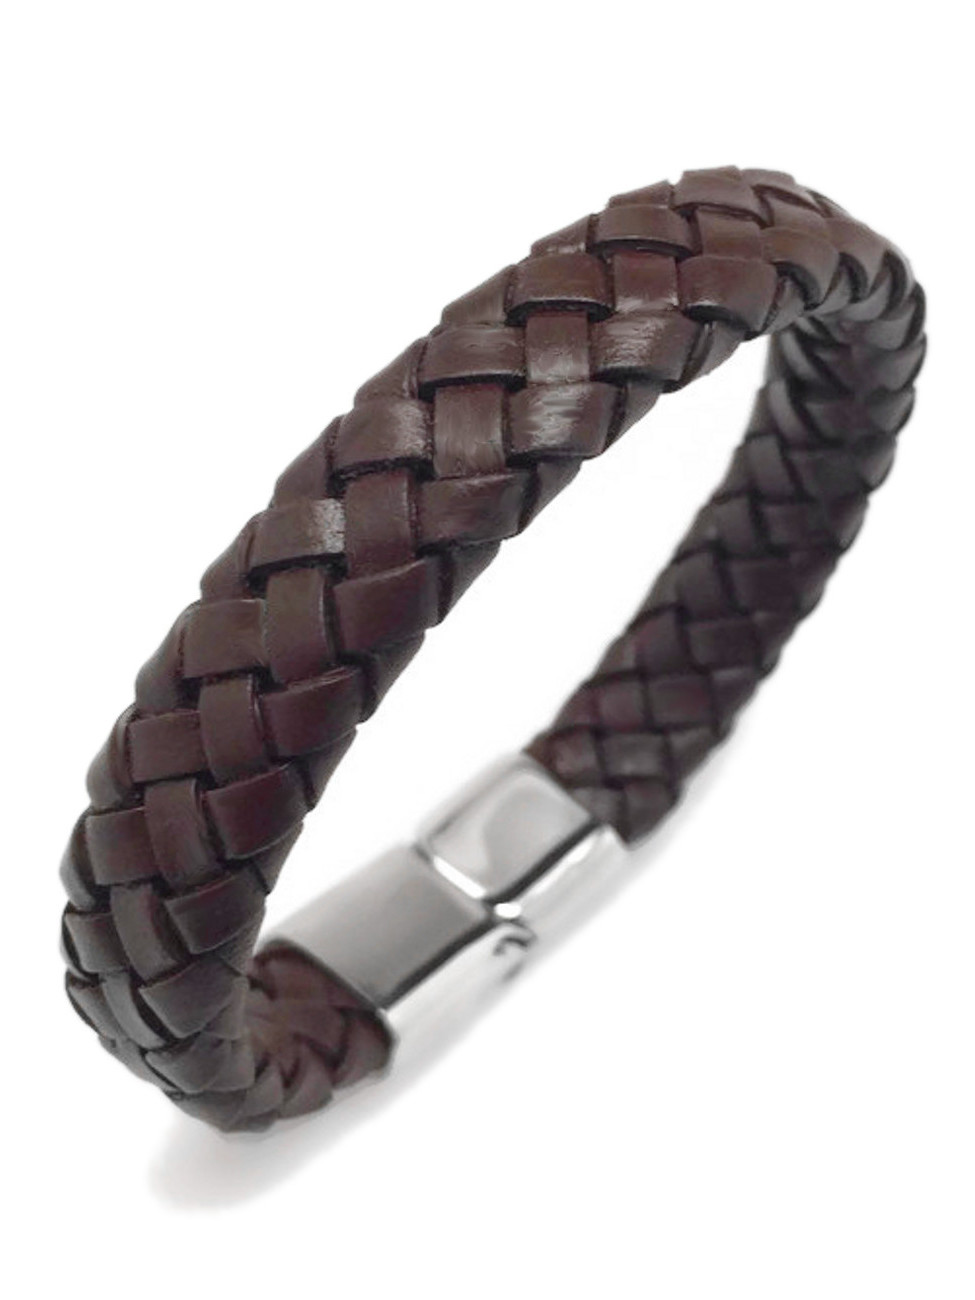 cuff leather bracelet leather cuff bracelet Men/'s leather cuff bracelet men/'s cuff leather bracelet. dark brown leather bracelet